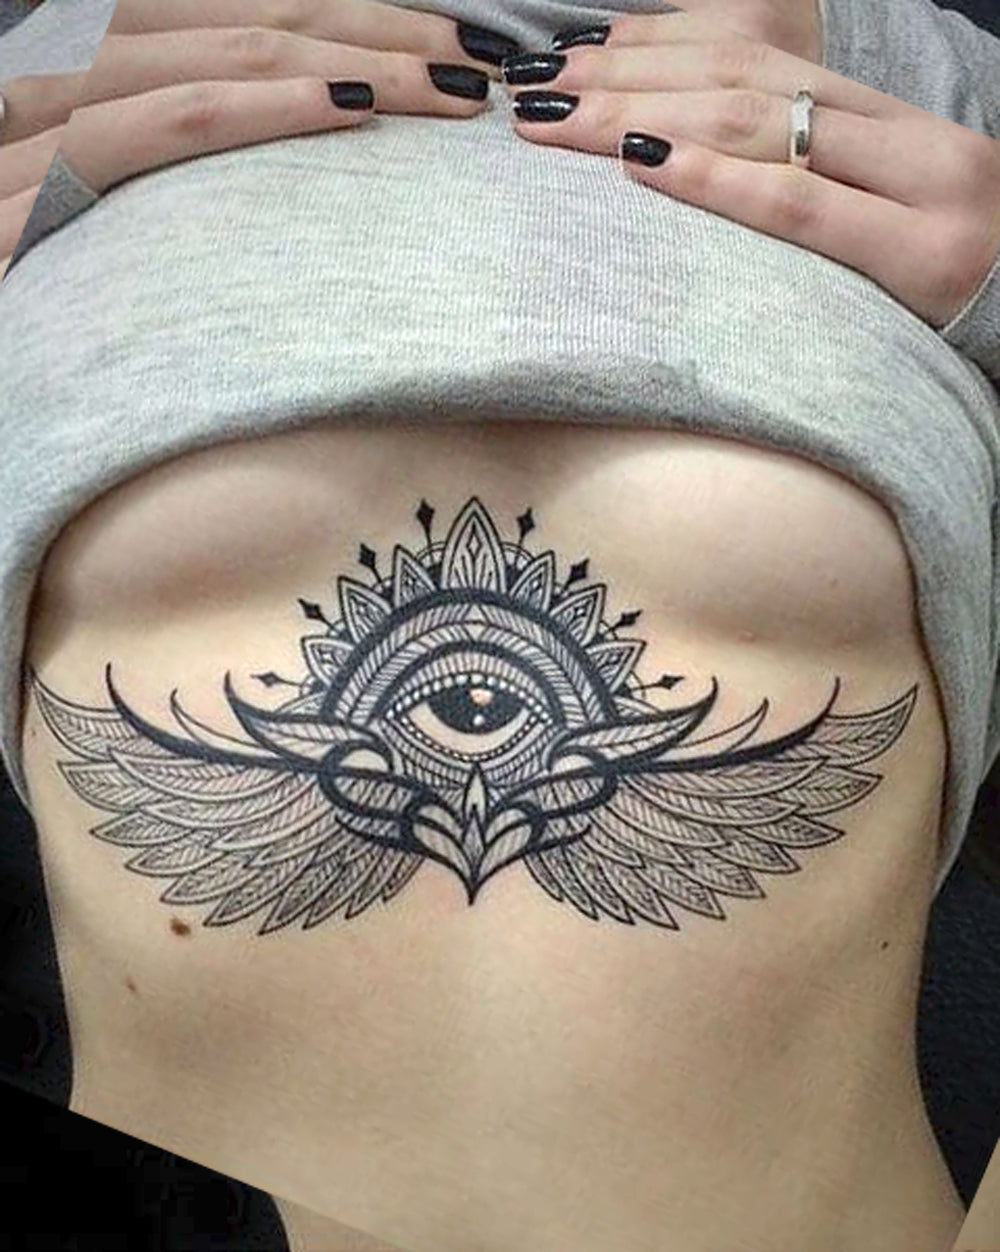 Women's Large Evil Eye Angel Wings Sternum Tattoo Ideas - www.MyBodiArt.com